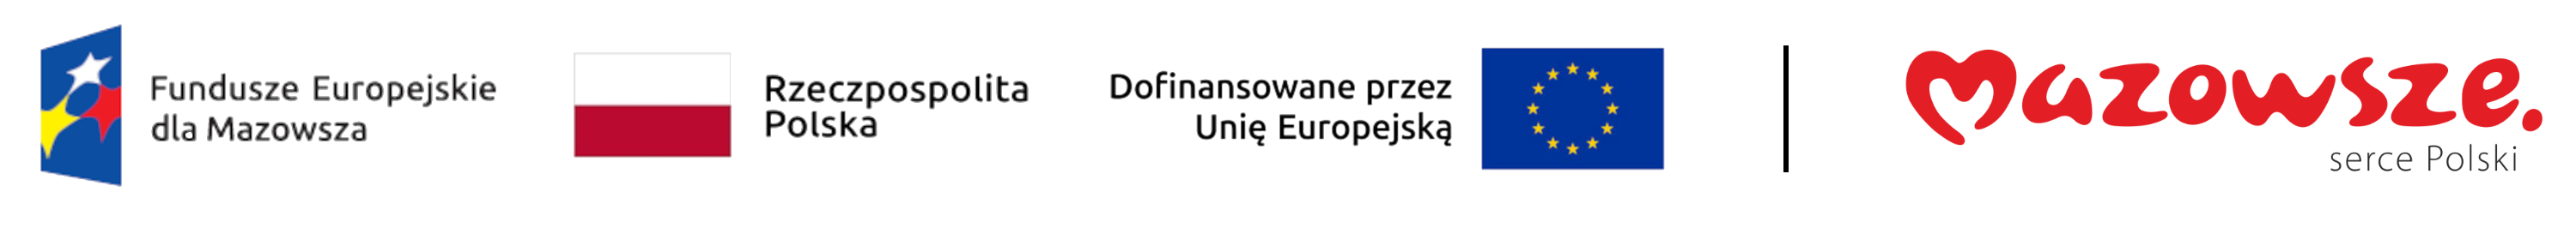 Loga - Fundusze Europejskie dla Mazowsza - Flaga Rzeczpospolita Polska - Dofinansowane przez Unię Europejską - Mazowsze Serce Polski